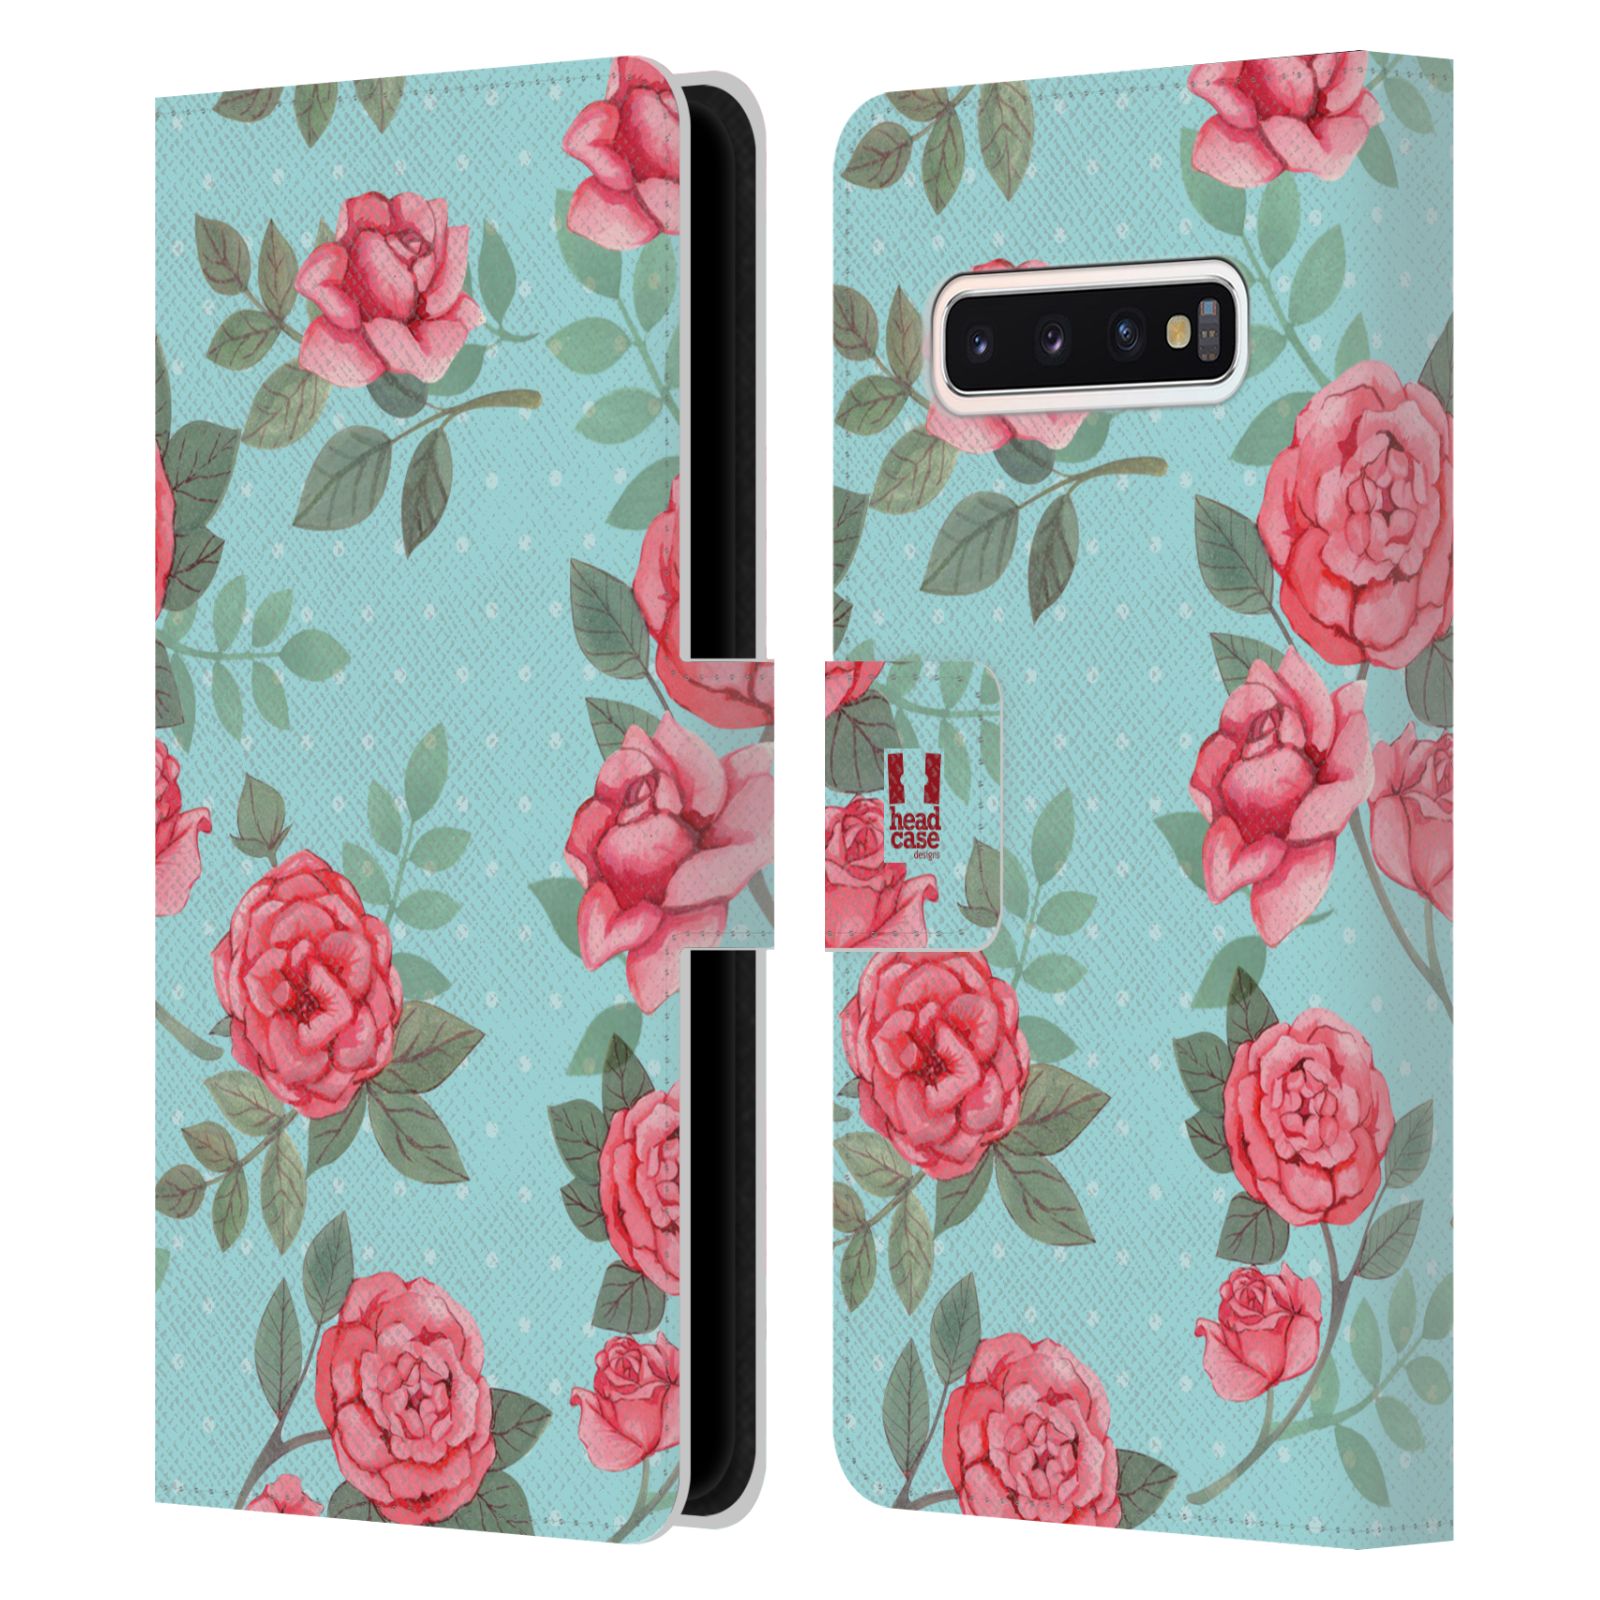 Pouzdro HEAD CASE na mobil Samsung Galaxy S10 romantické květy velké růže modrá a růžová